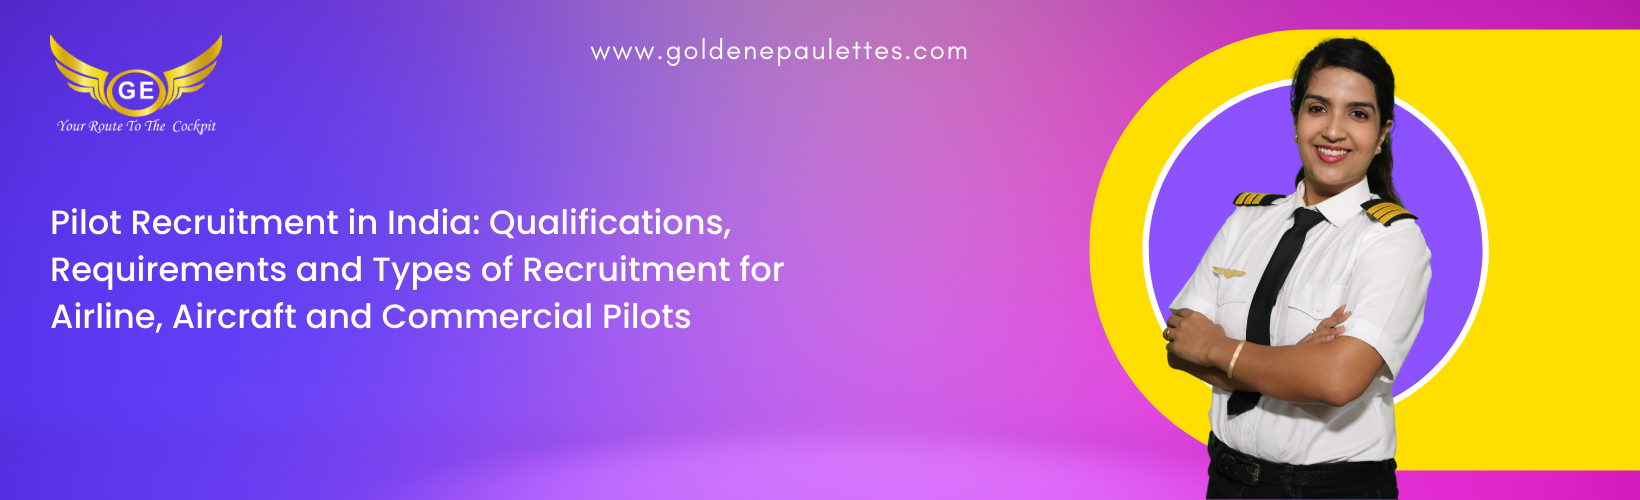 Pilot Recruitment in India